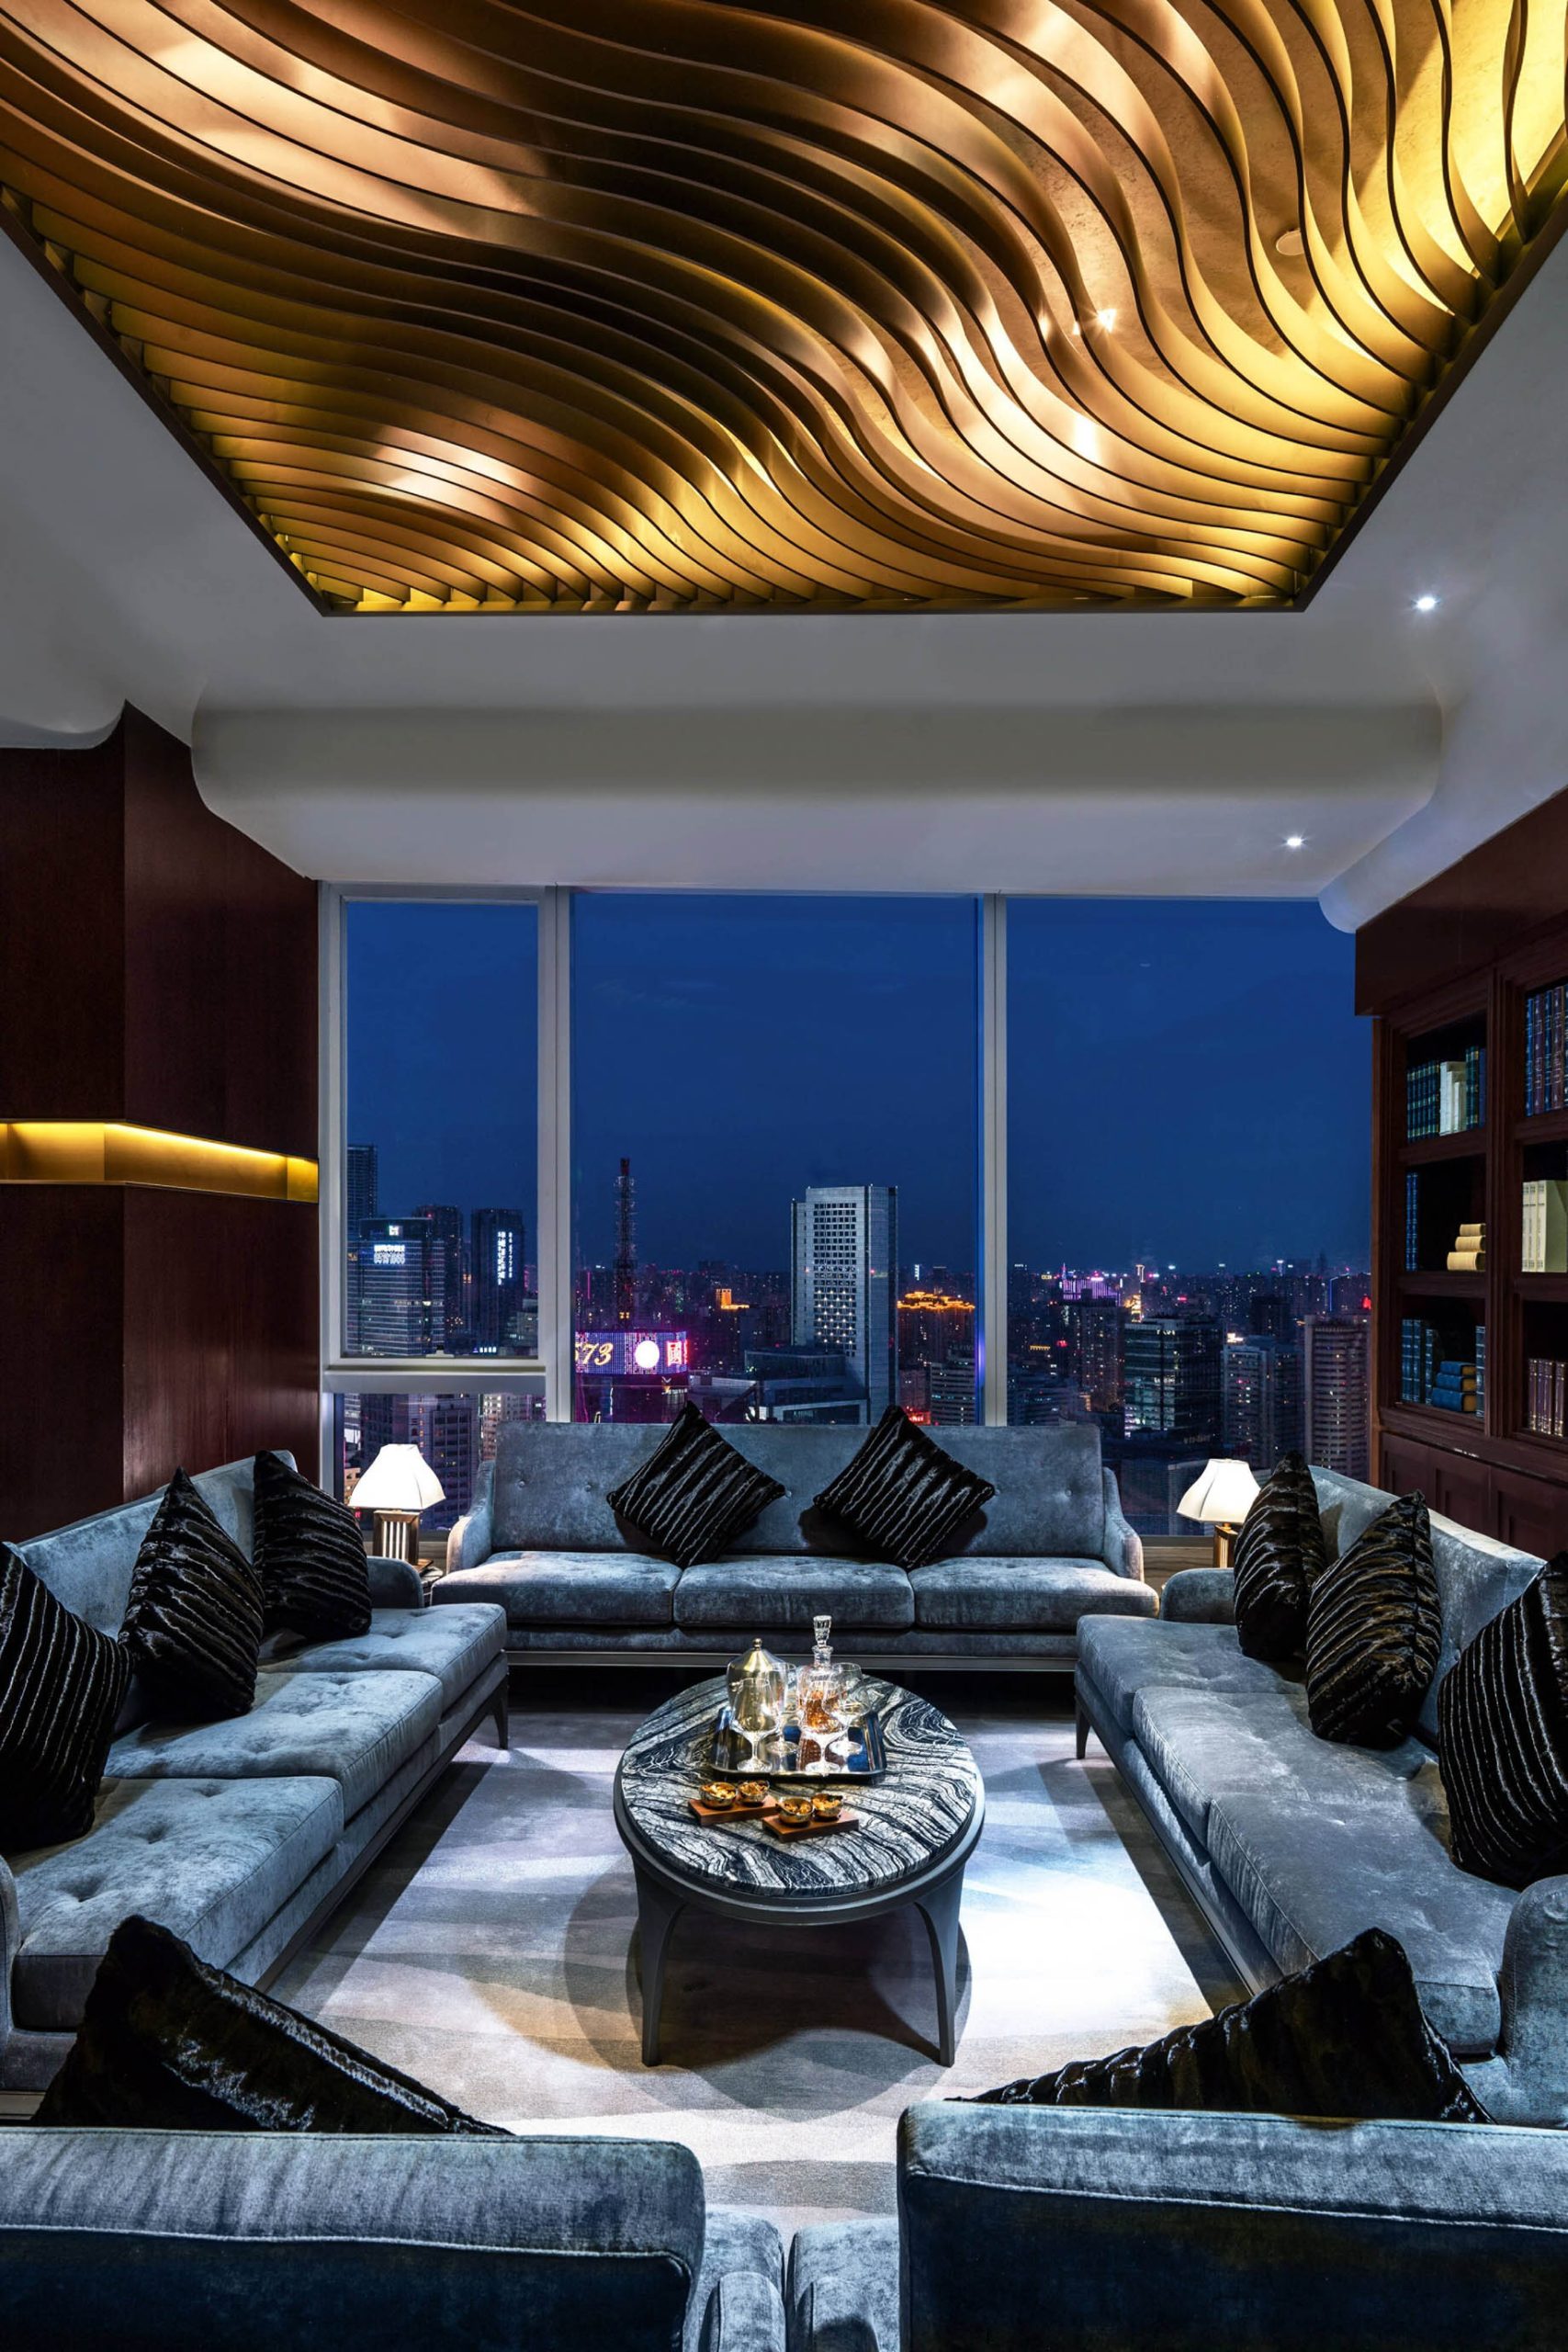 The St. Regis Chengdu Hotel – Chengdu, Sichuan, China – Yun Fu Private Dining Room Design